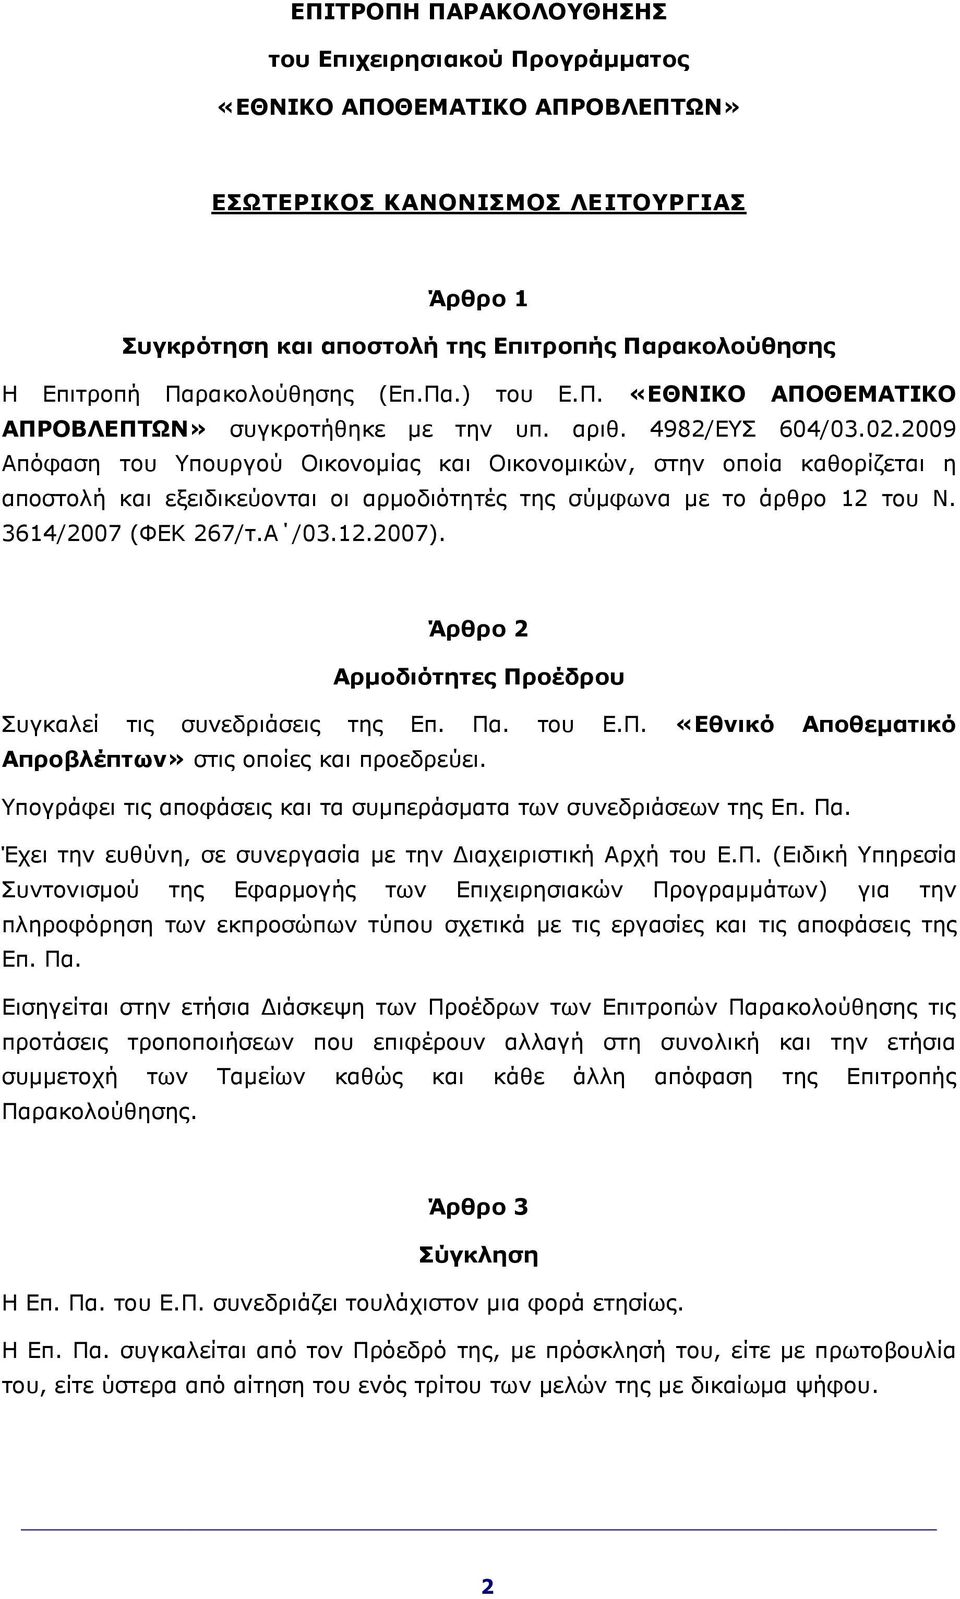 2009 Απόφαση του Υπουργού Οικονομίας και Οικονομικών, στην οποία καθορίζεται η αποστολή και εξειδικεύονται οι αρμοδιότητές της σύμφωνα με το άρθρο 12 του Ν. 3614/2007 (ΦΕΚ 267/τ.Α /03.12.2007).